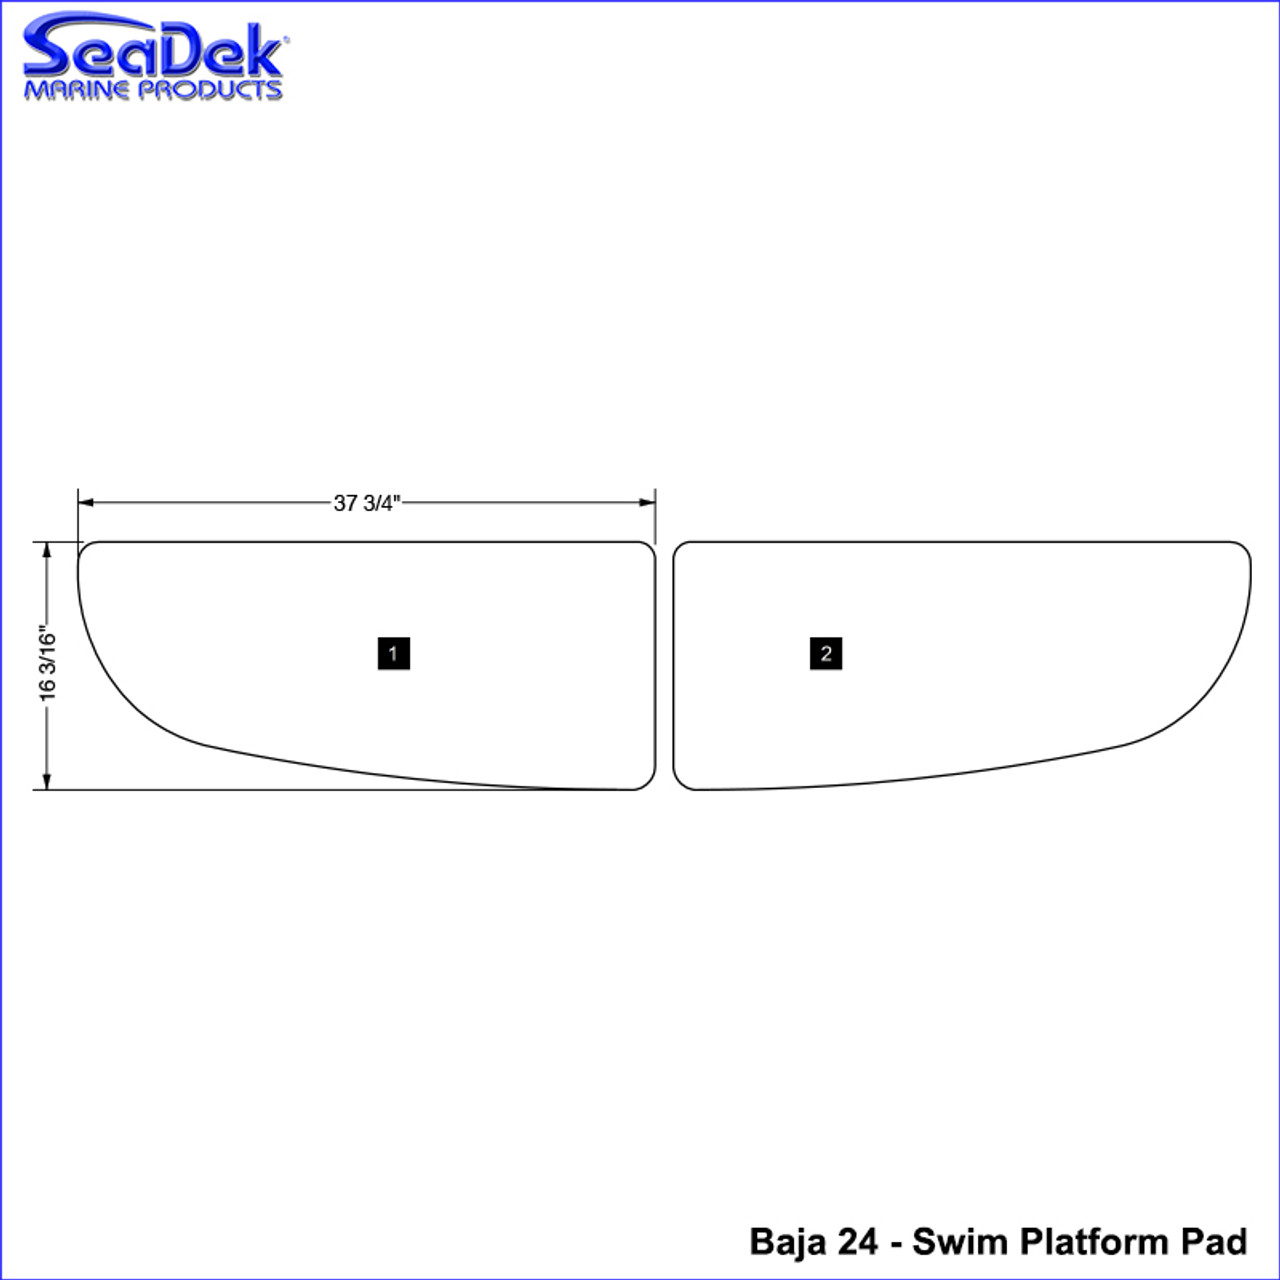 SeaDek Swim Platform Pads for Baja Models